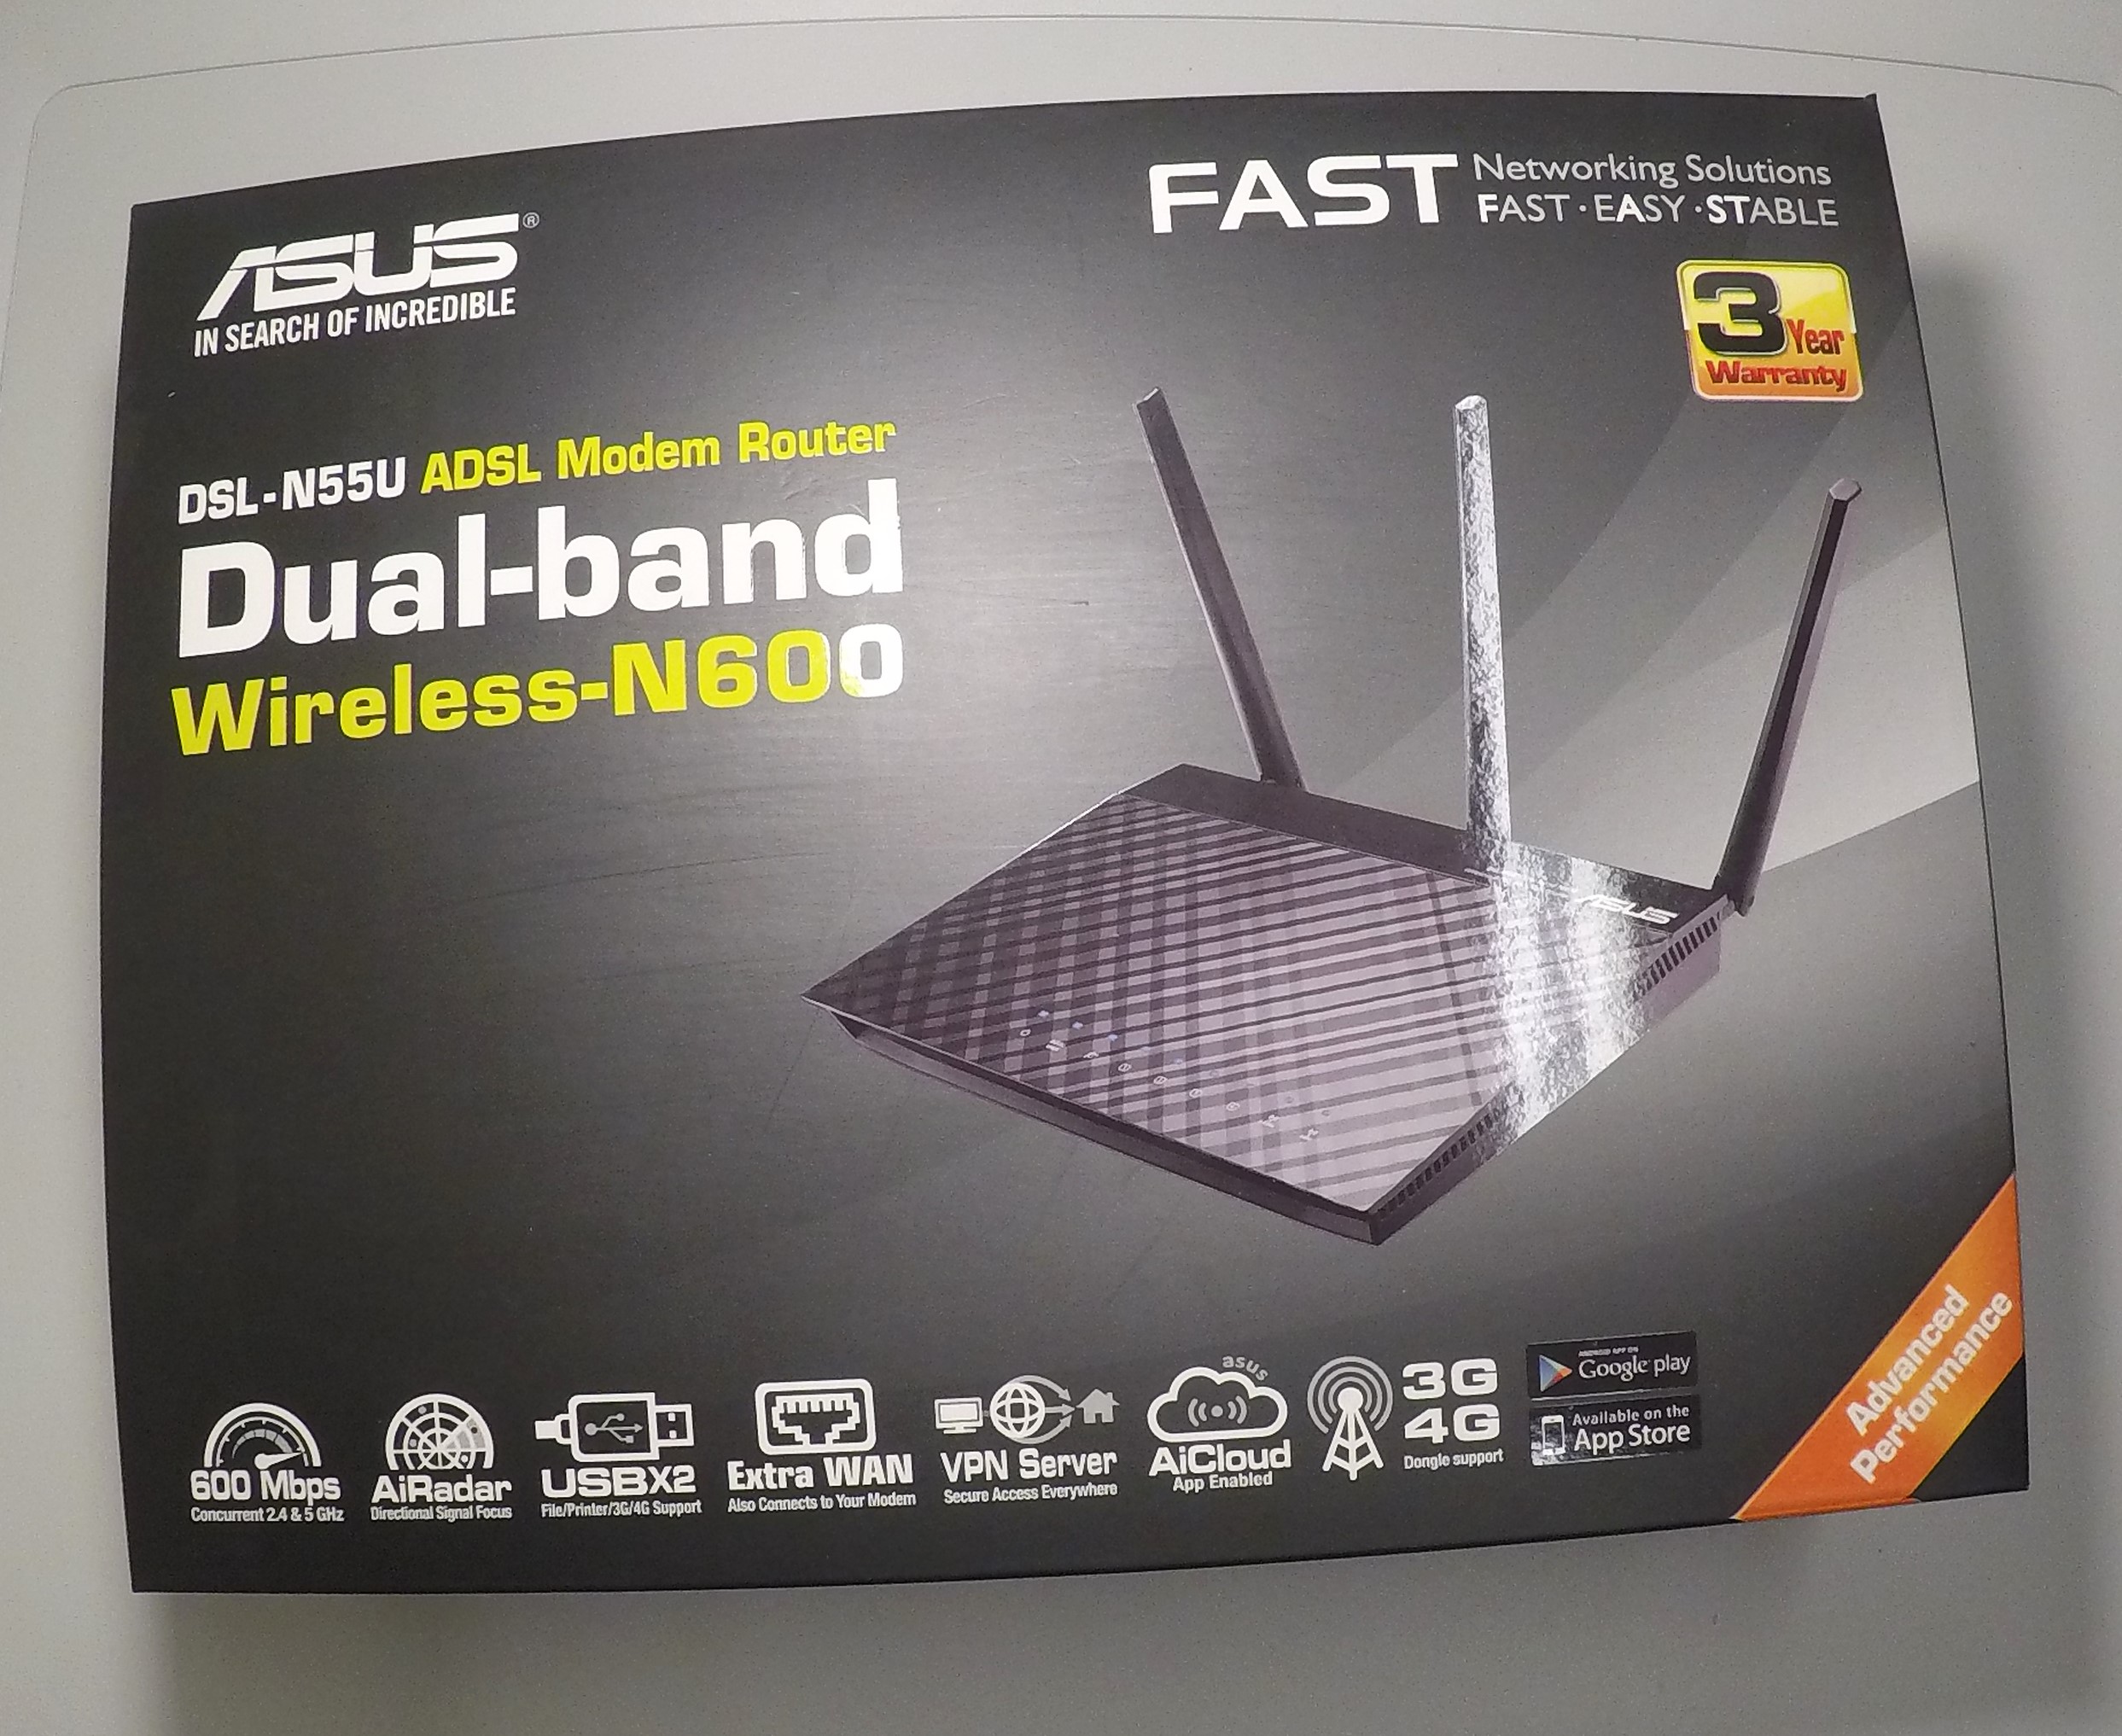 Router ASUS DSL-N55U Dual-brand N600 Nowy